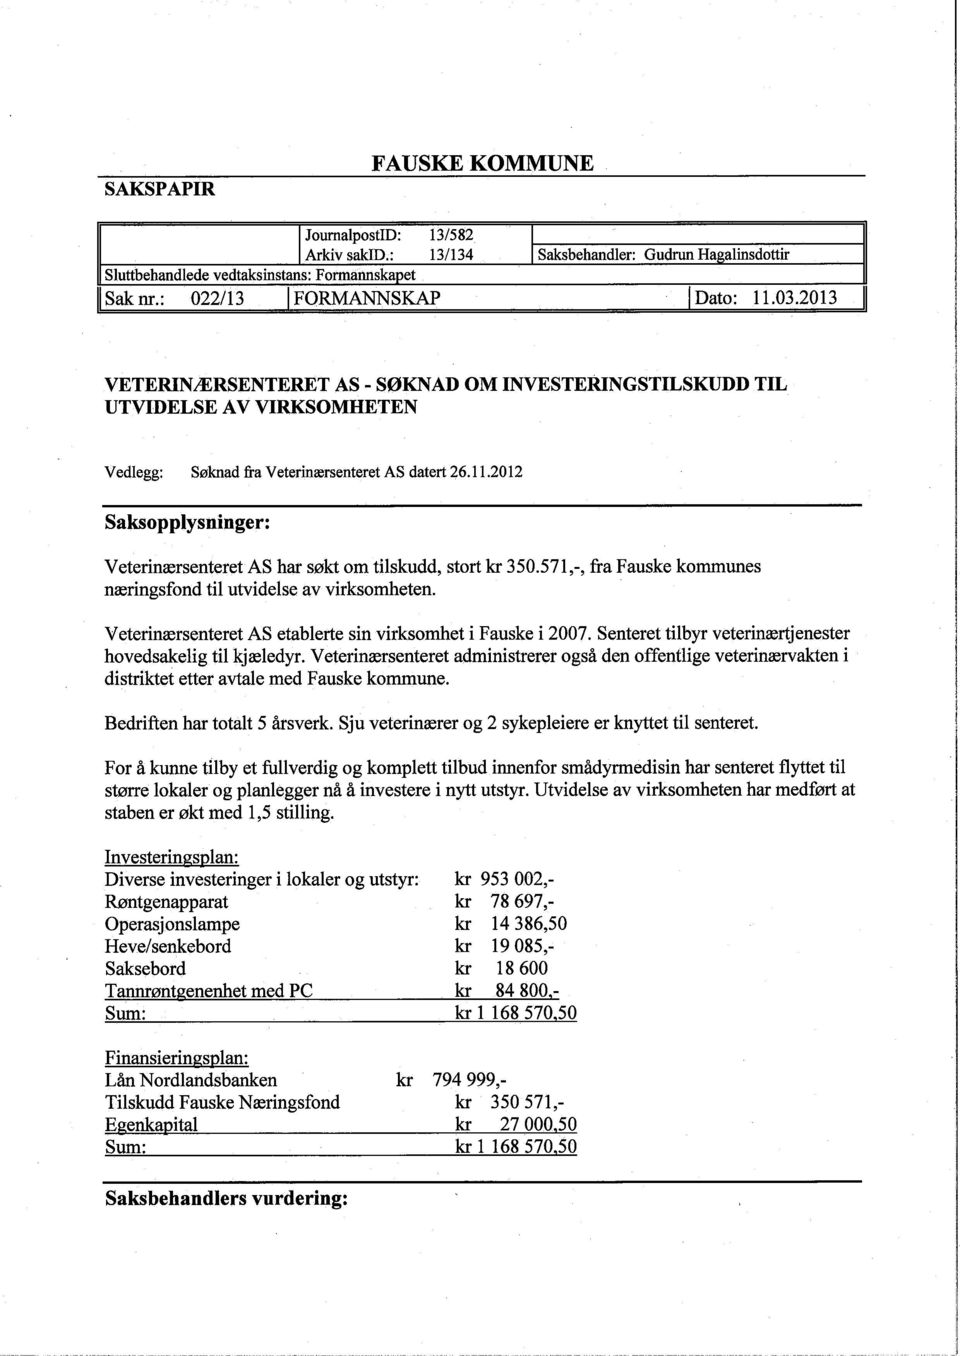 2012 Saksopplysninger: VeterinærsenteretAS har søkt om tilskudd, stort kr 350.571,-, fra Fauske kommunes næringsfond til utvidelse av virksomheten.